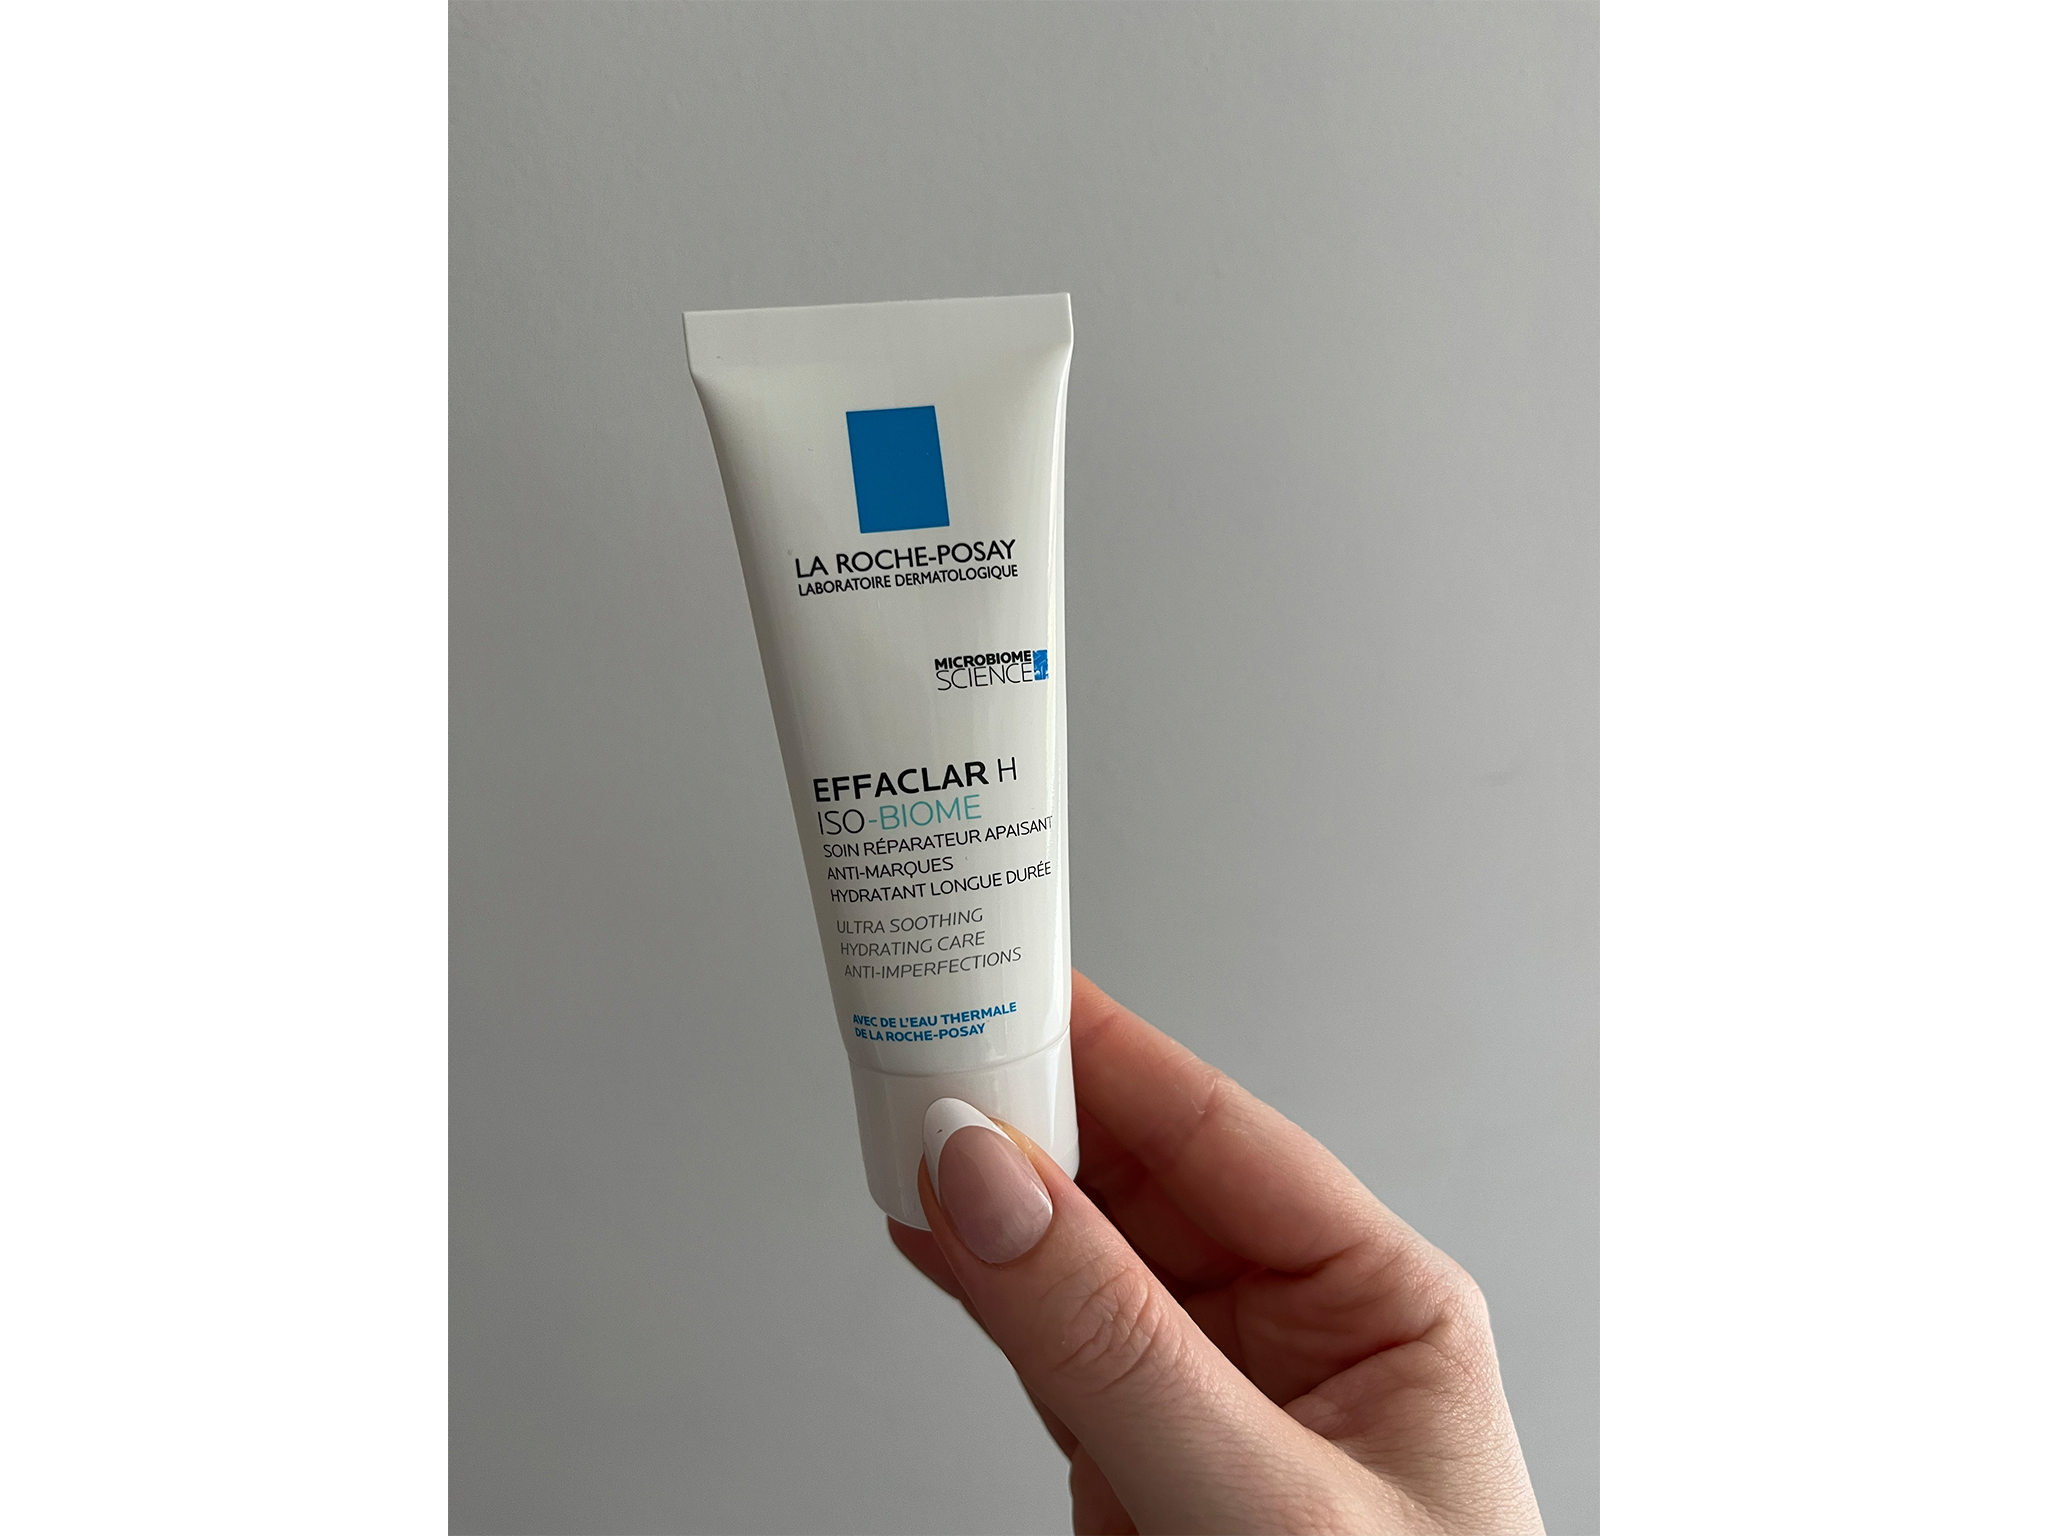 La Roche-Posay effaclar H moisturising cream